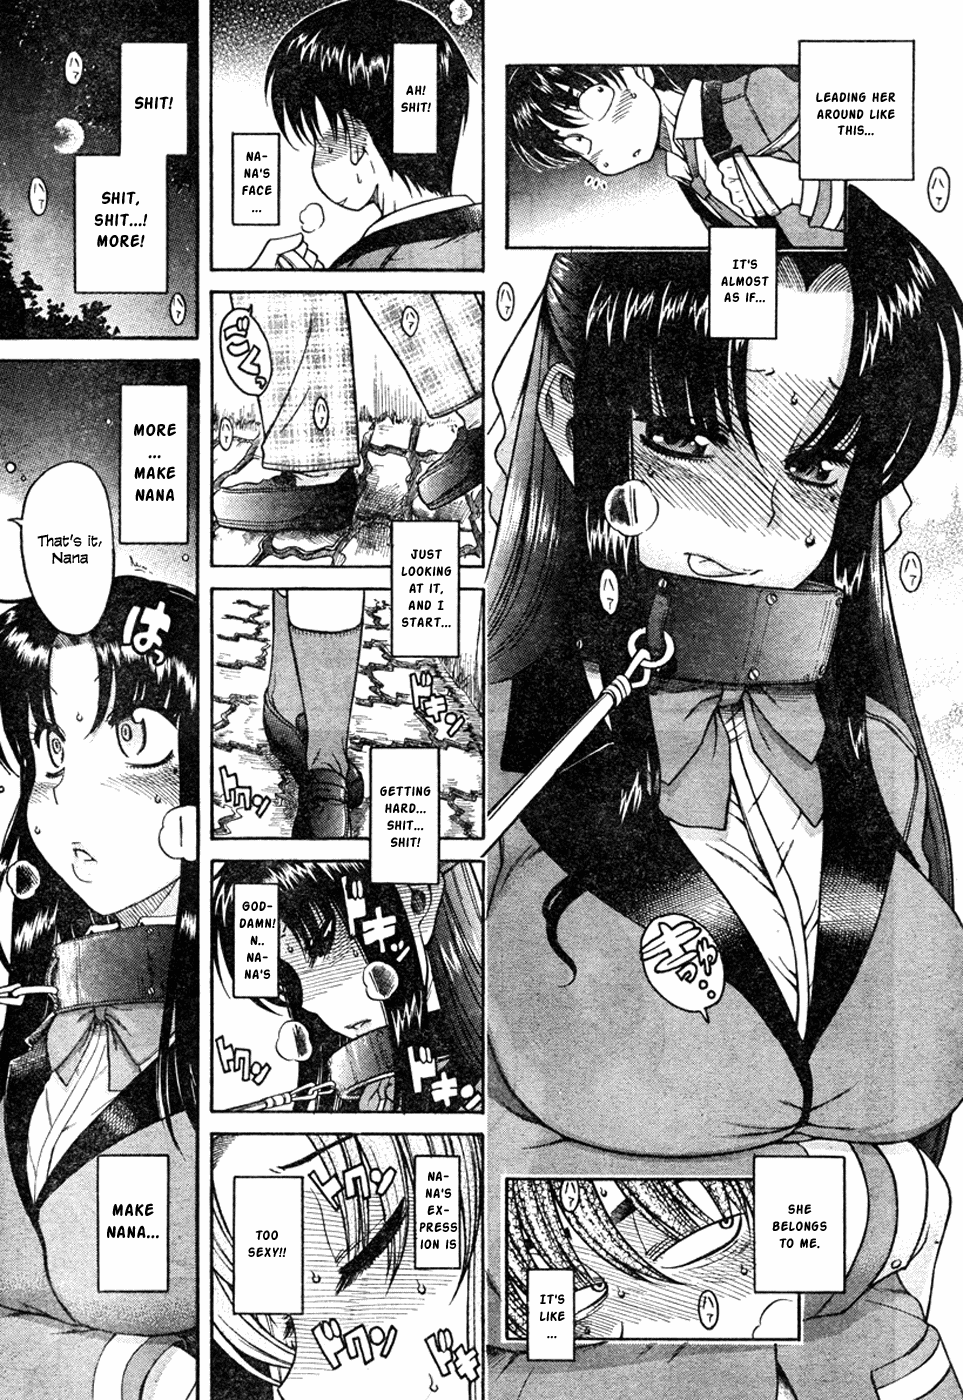 N to K Manga Chapter 5